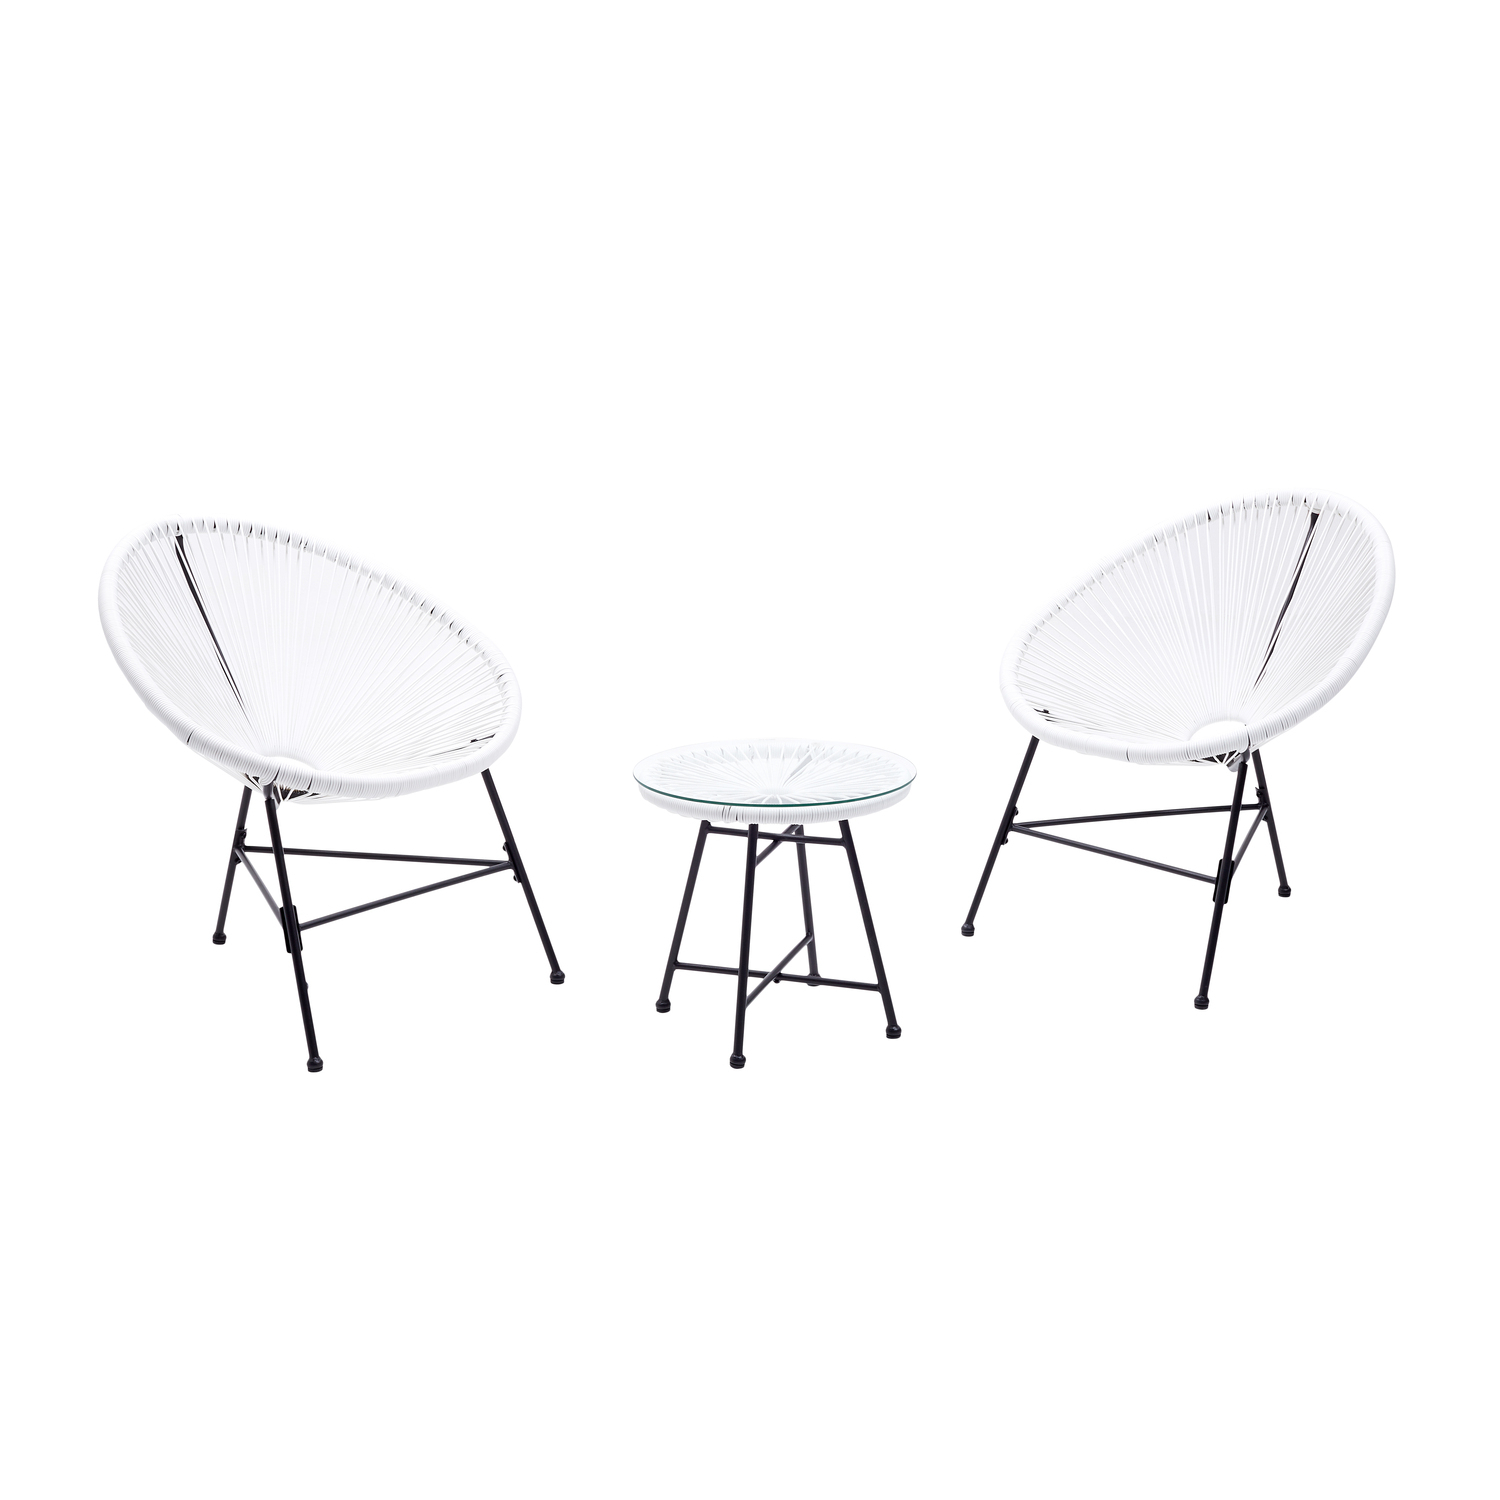 Salon de jardin 2 fauteuils oeuf + table basse blanc acapulco